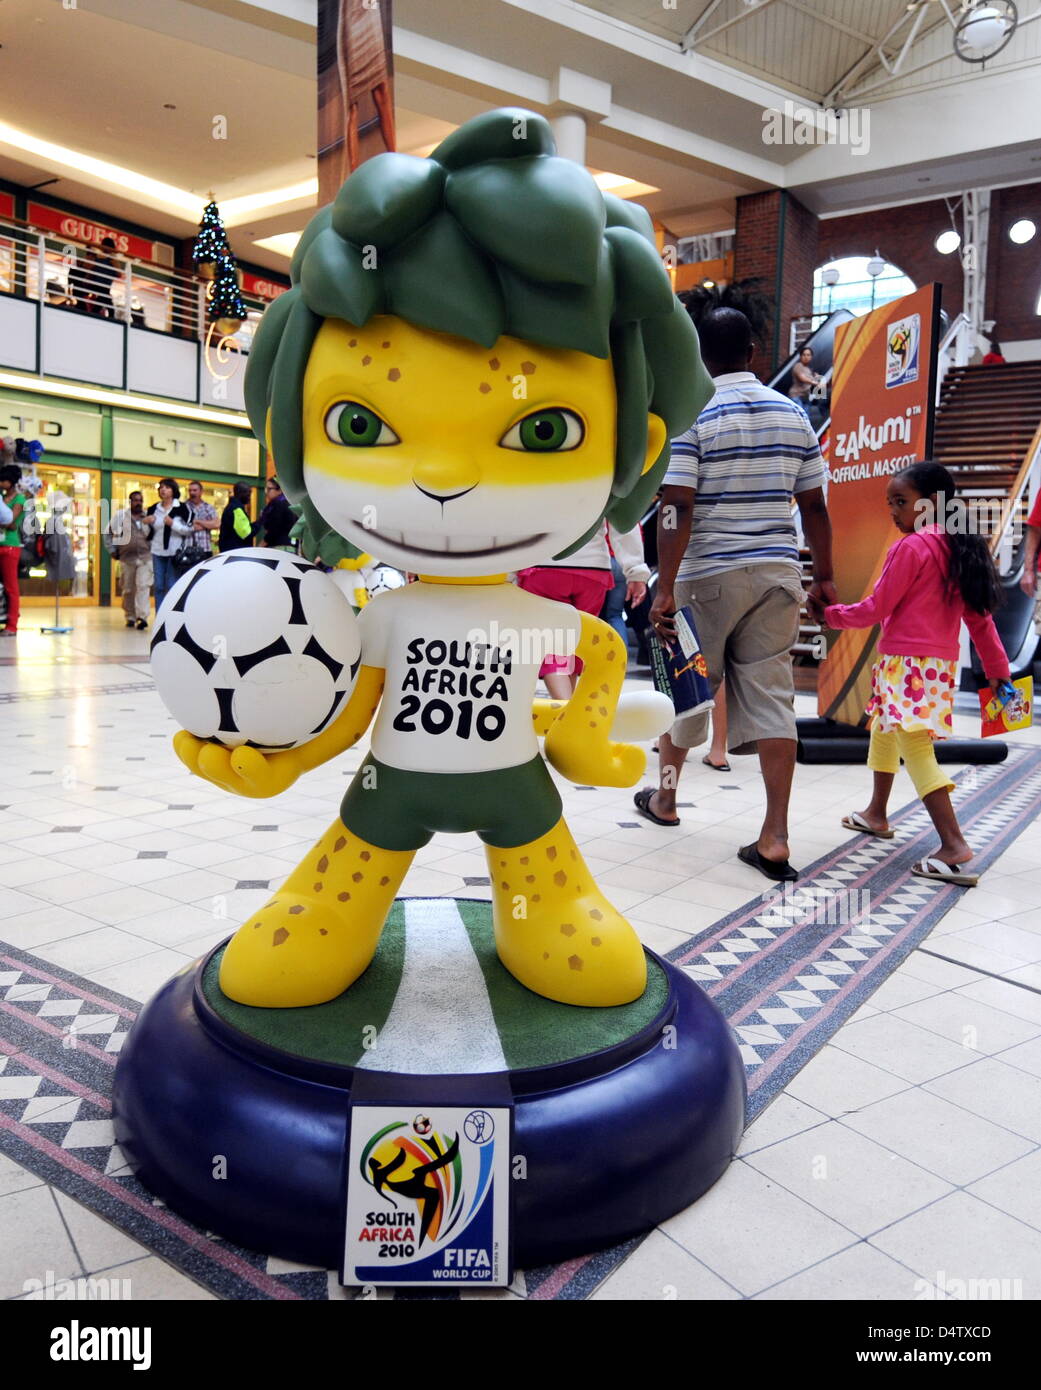 La mascota de la Copa Mundial de la FIFA 2010, Muñeco Zakumi, un leopardo  de desgaste en el fútbol, está en un centro comercial en Ciudad del Cabo,  Sudáfrica, 01 de diciembre